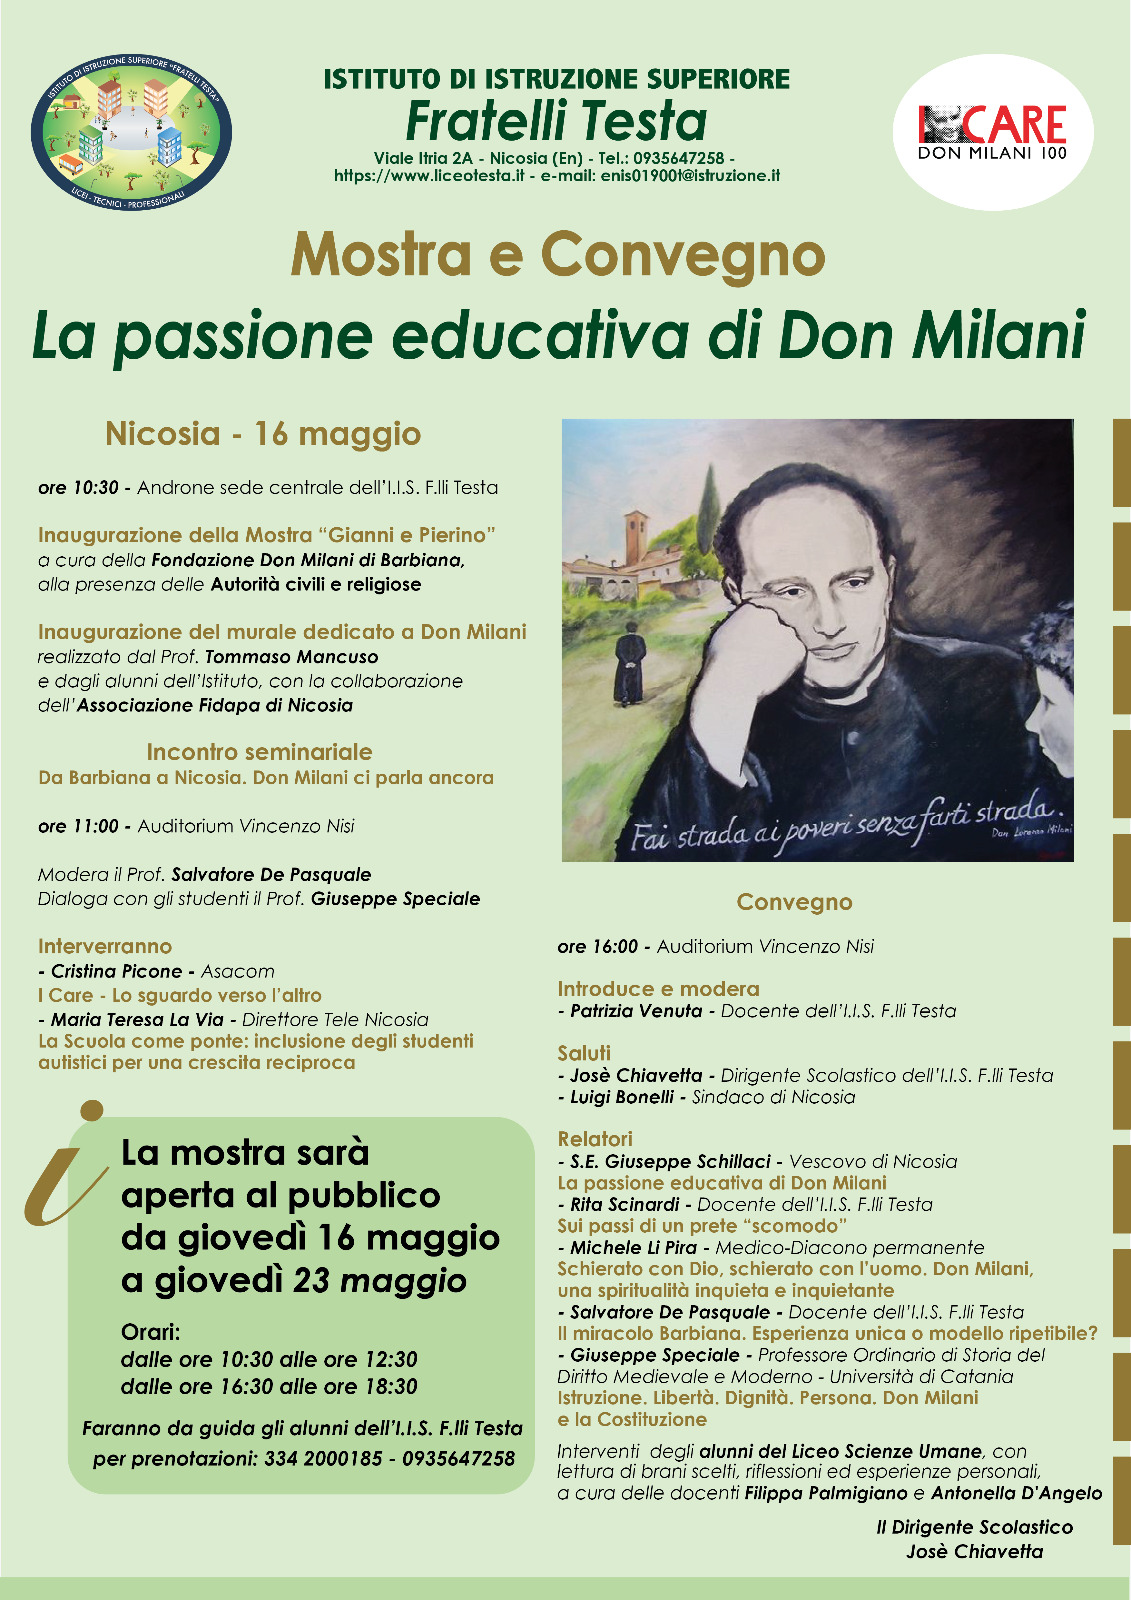 La passione educativa di Don Milani